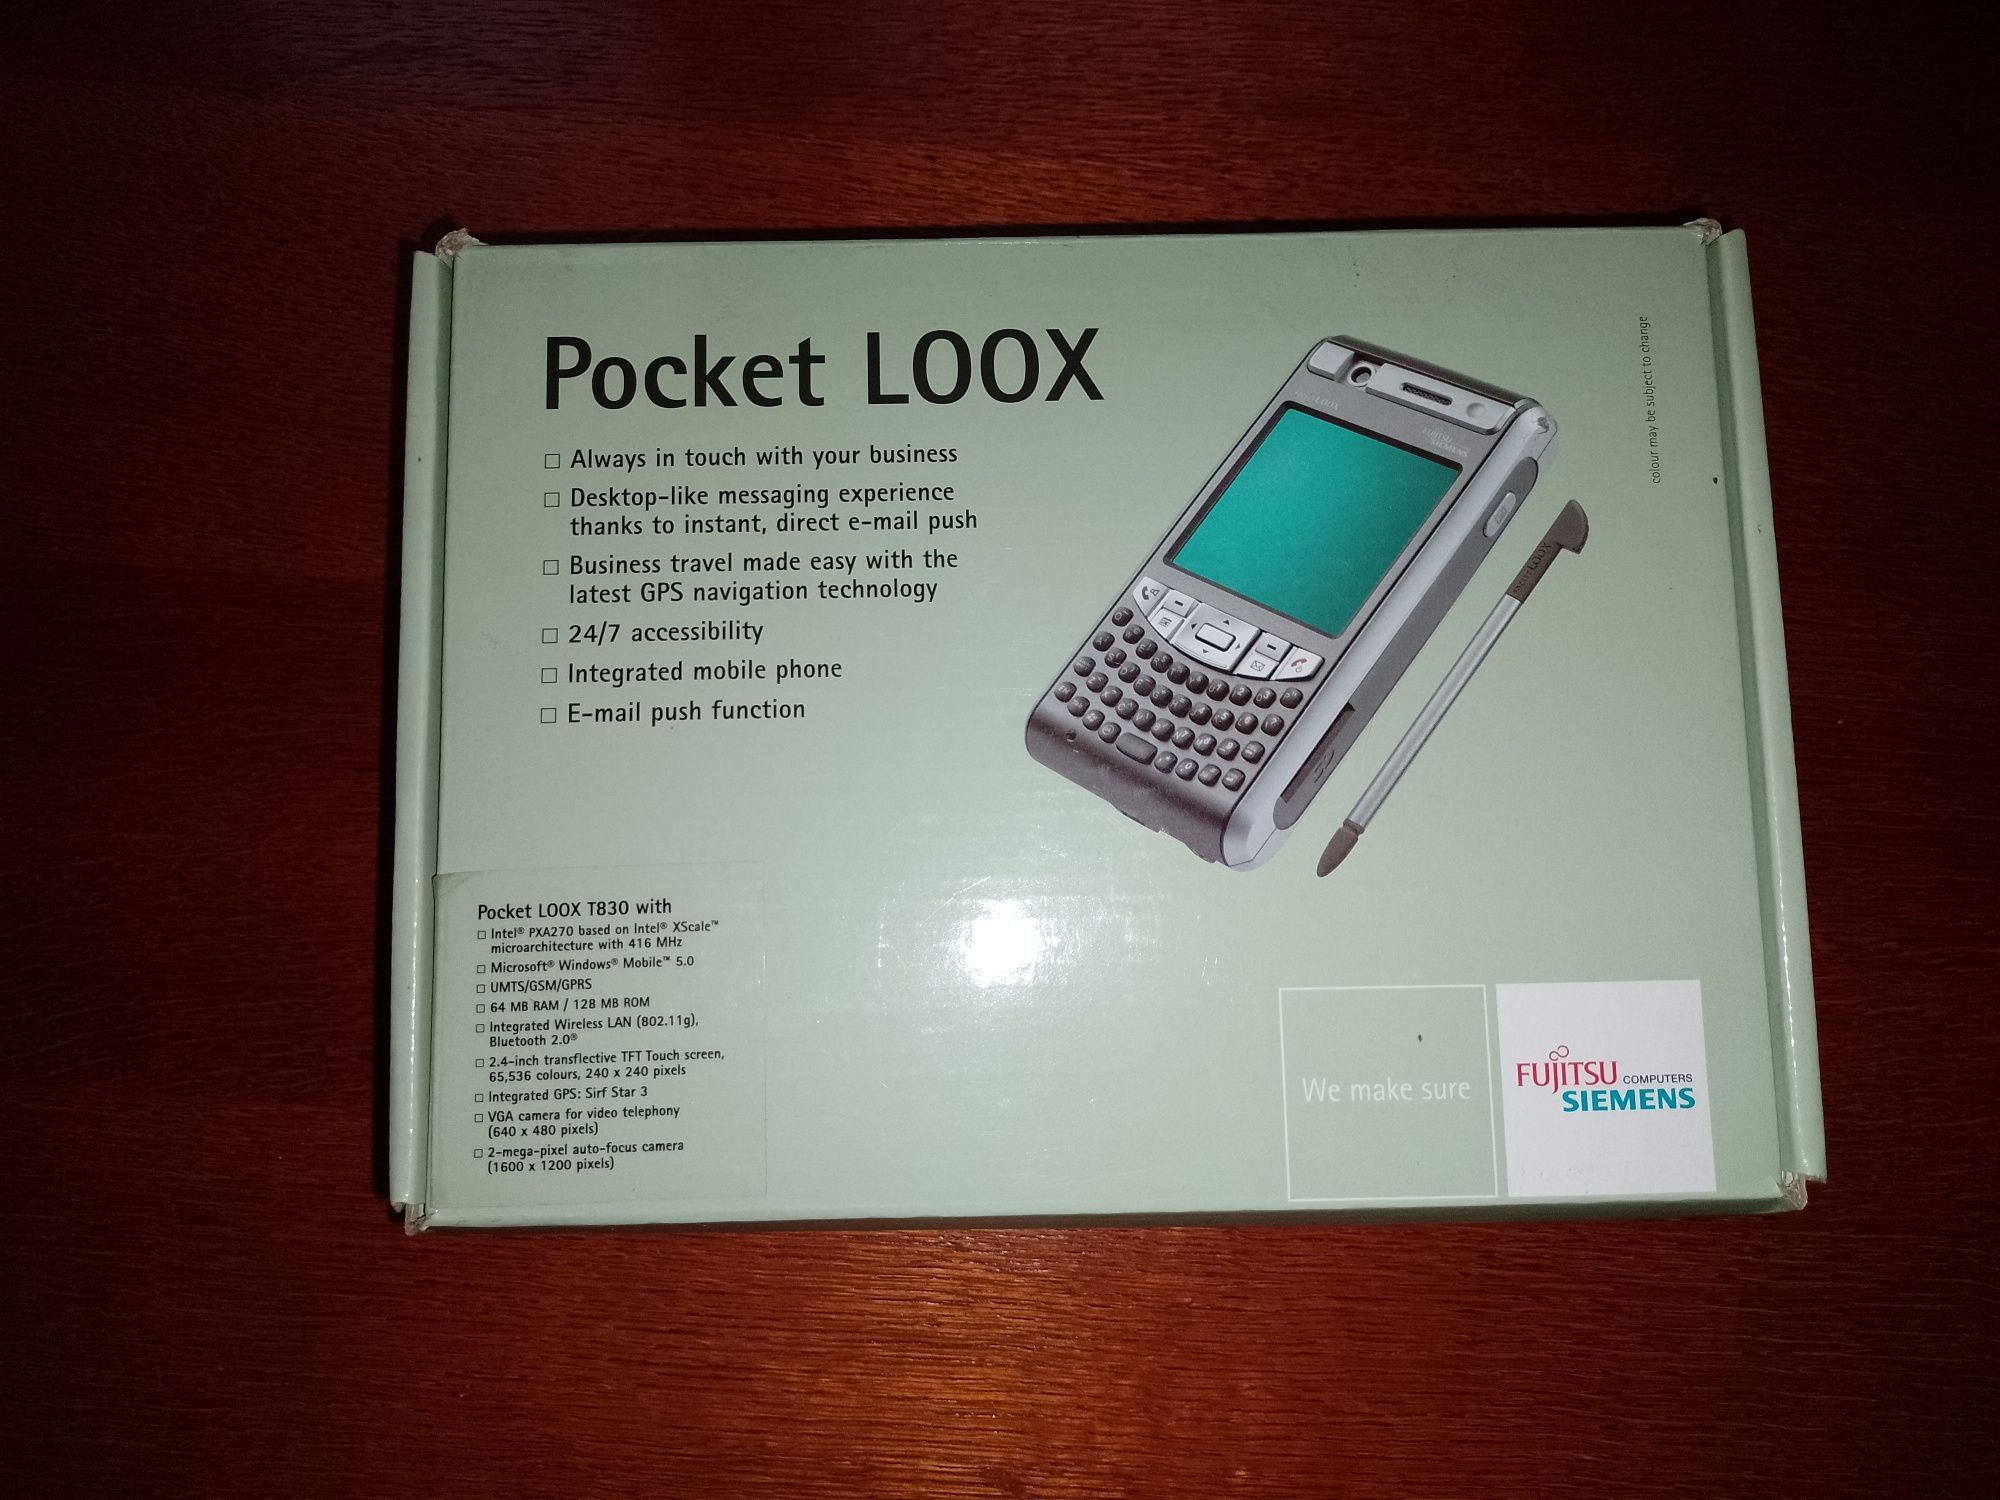 Pocket Loox T830
Zestaw zawiera: